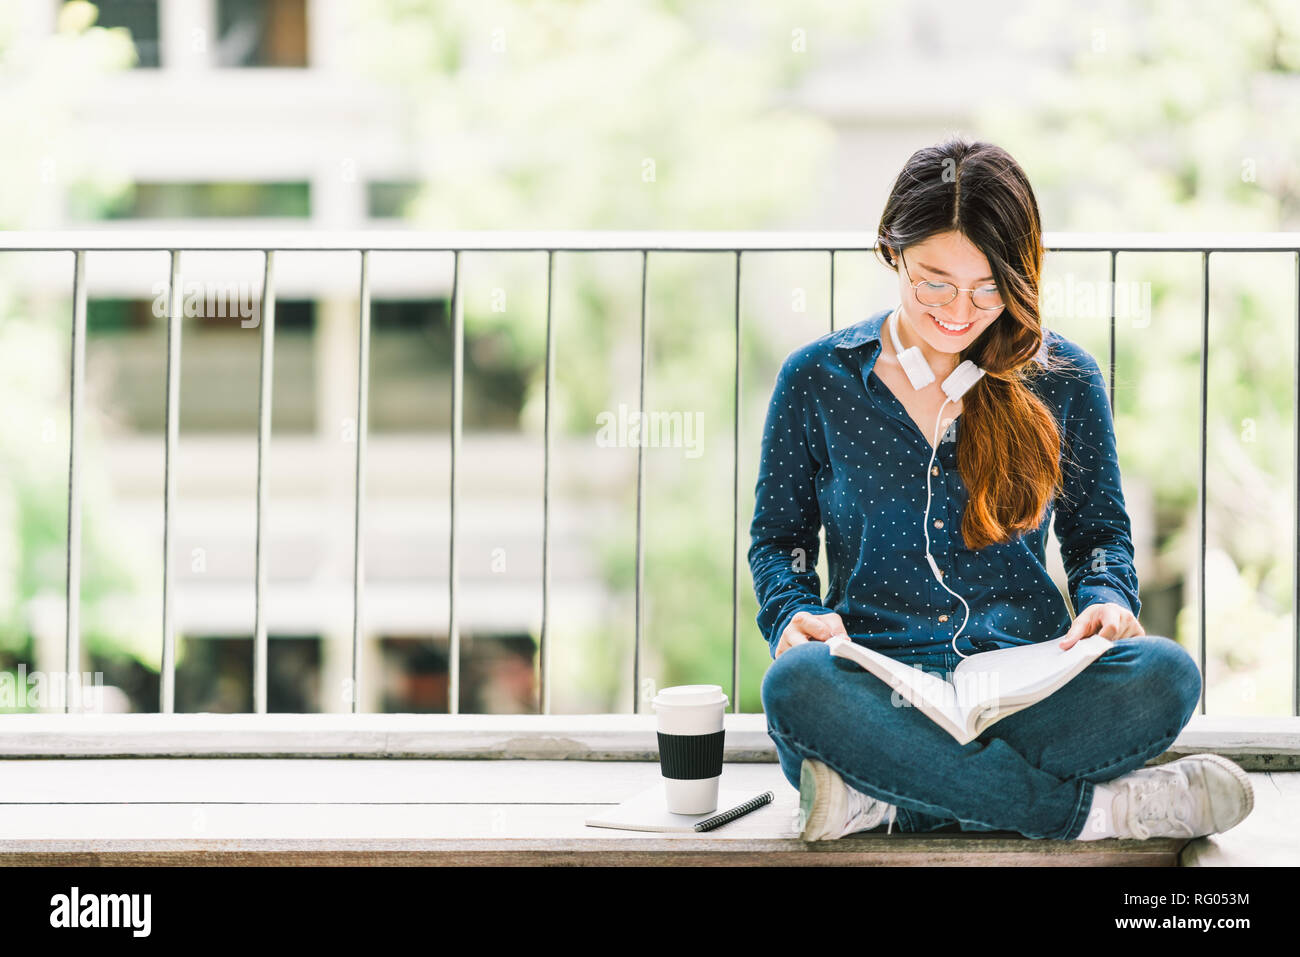 Giovani asiatici studente di college lettura della ragazza prenota per esame, seduti al campus universitario con copia spazio. L'istruzione informale o studiare il concetto di stile di vita Foto Stock